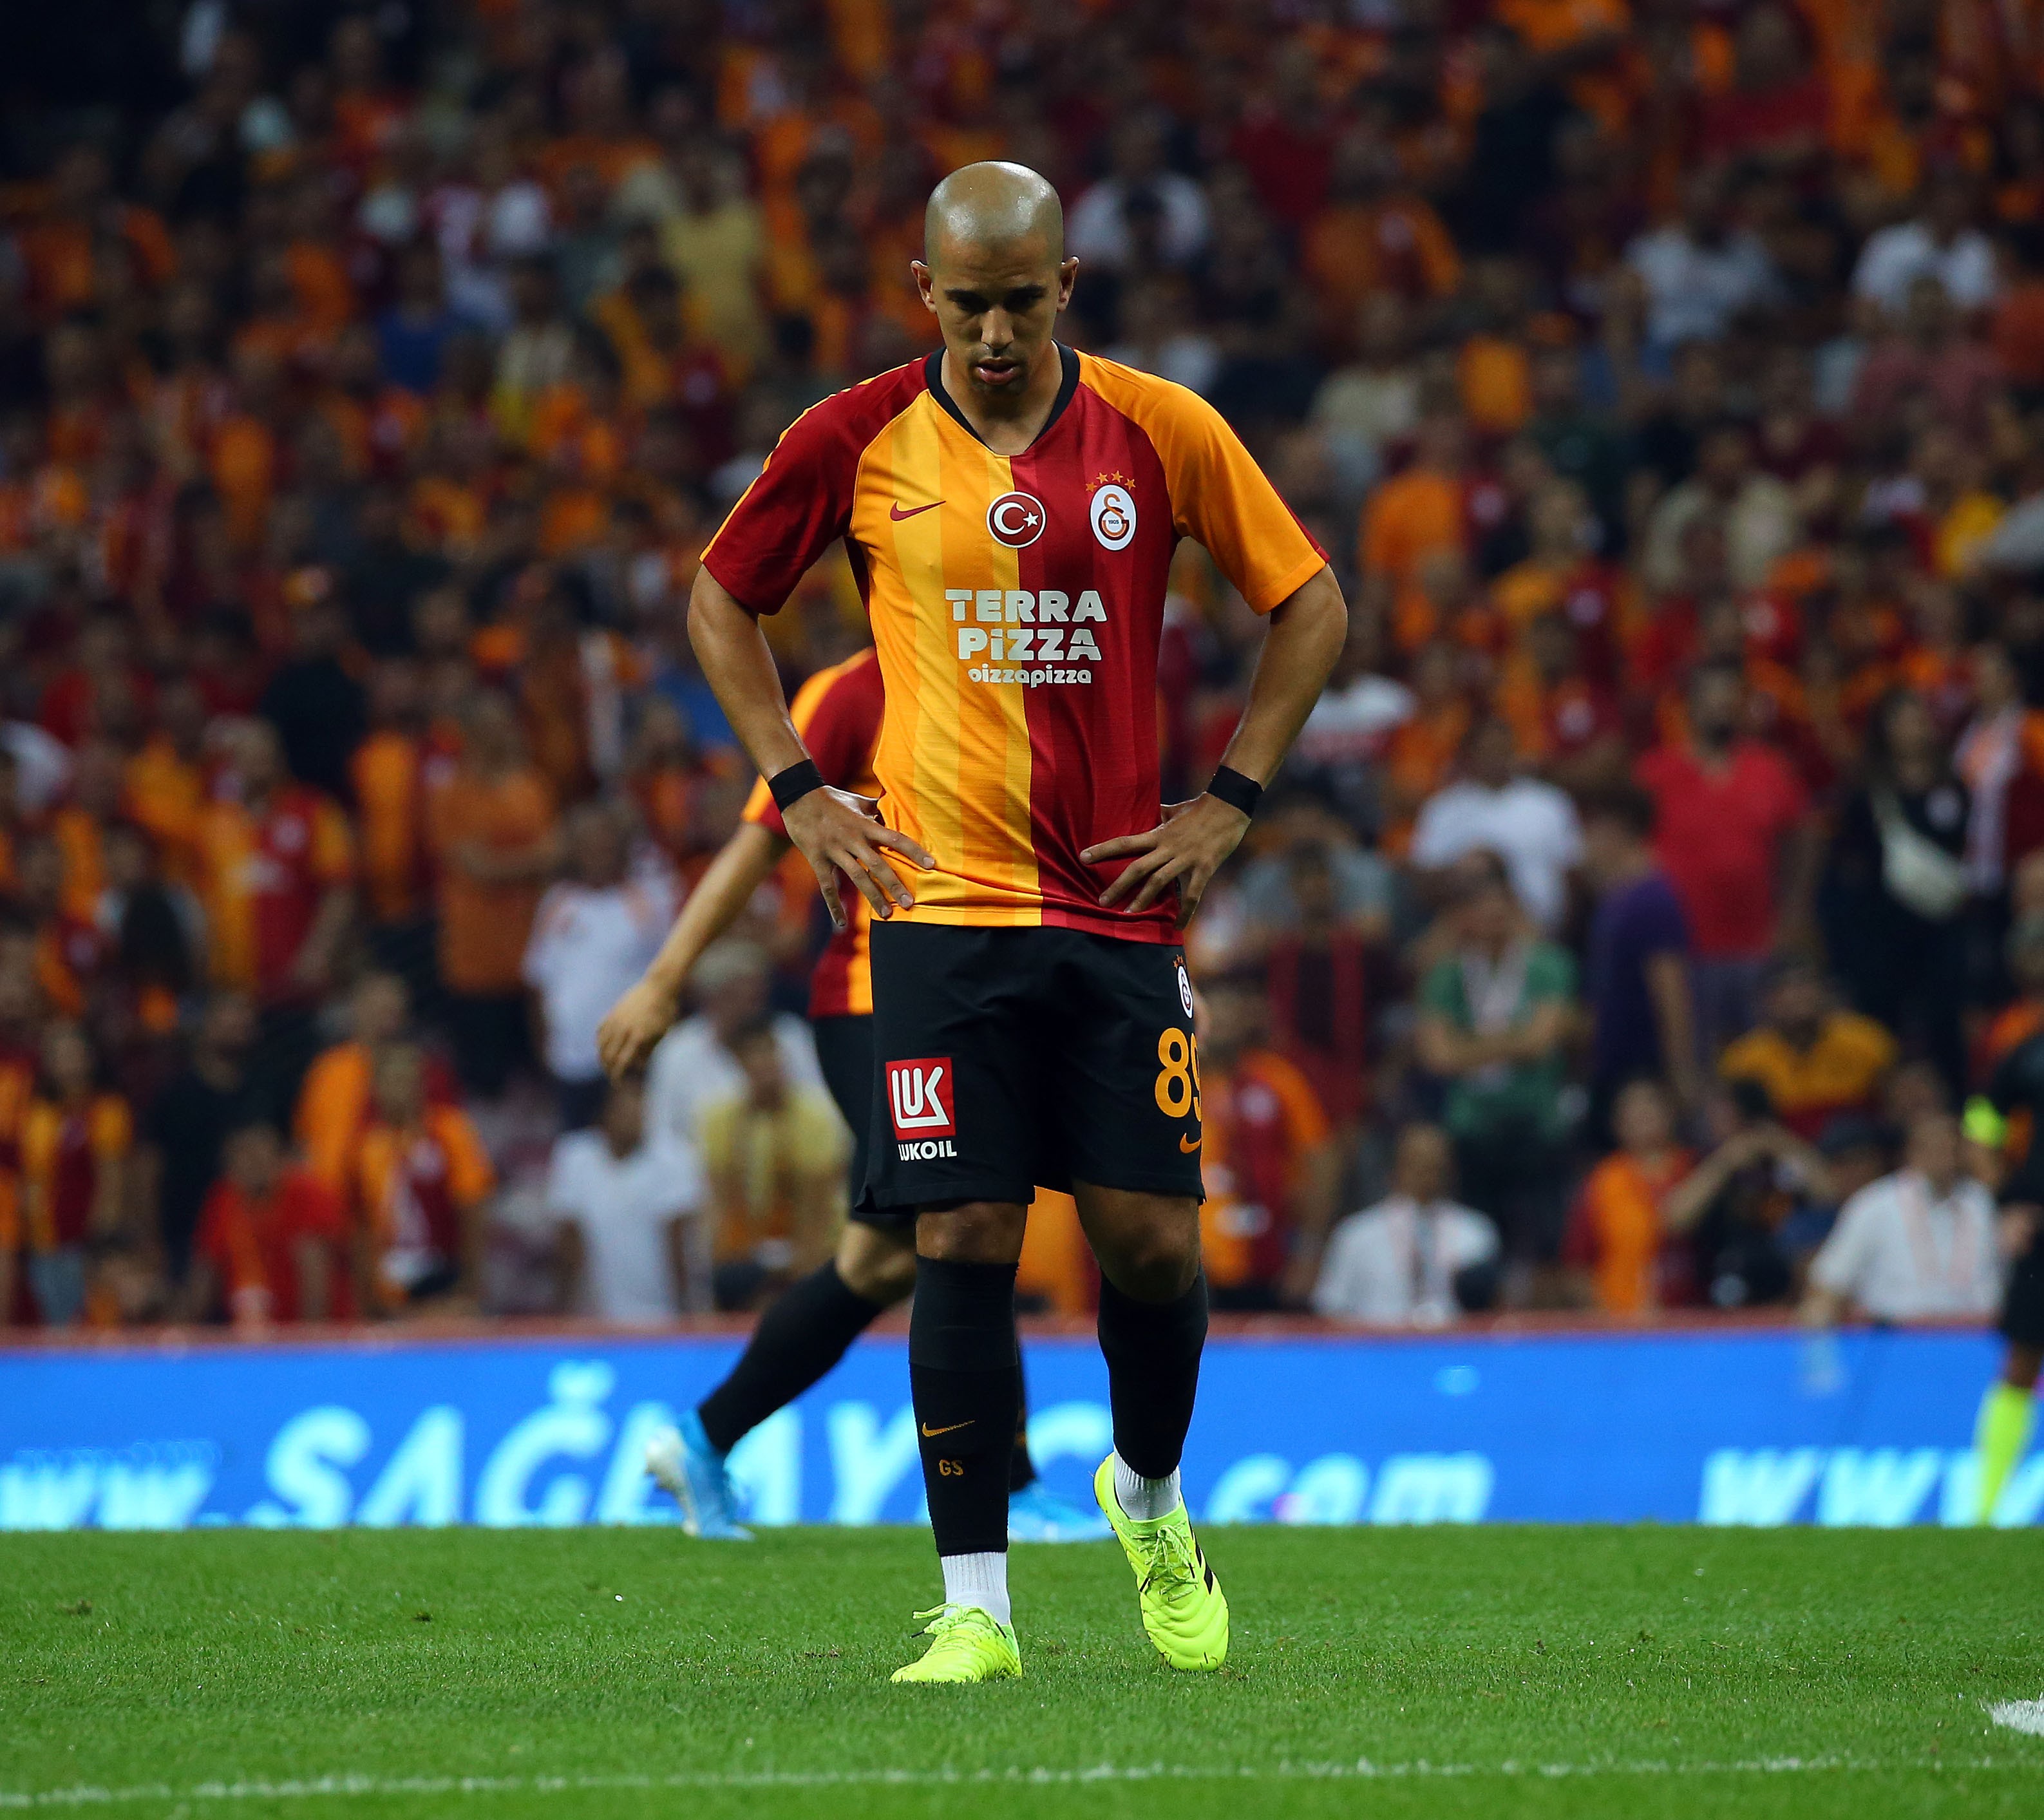 Galatasaray - Konyaspor 11